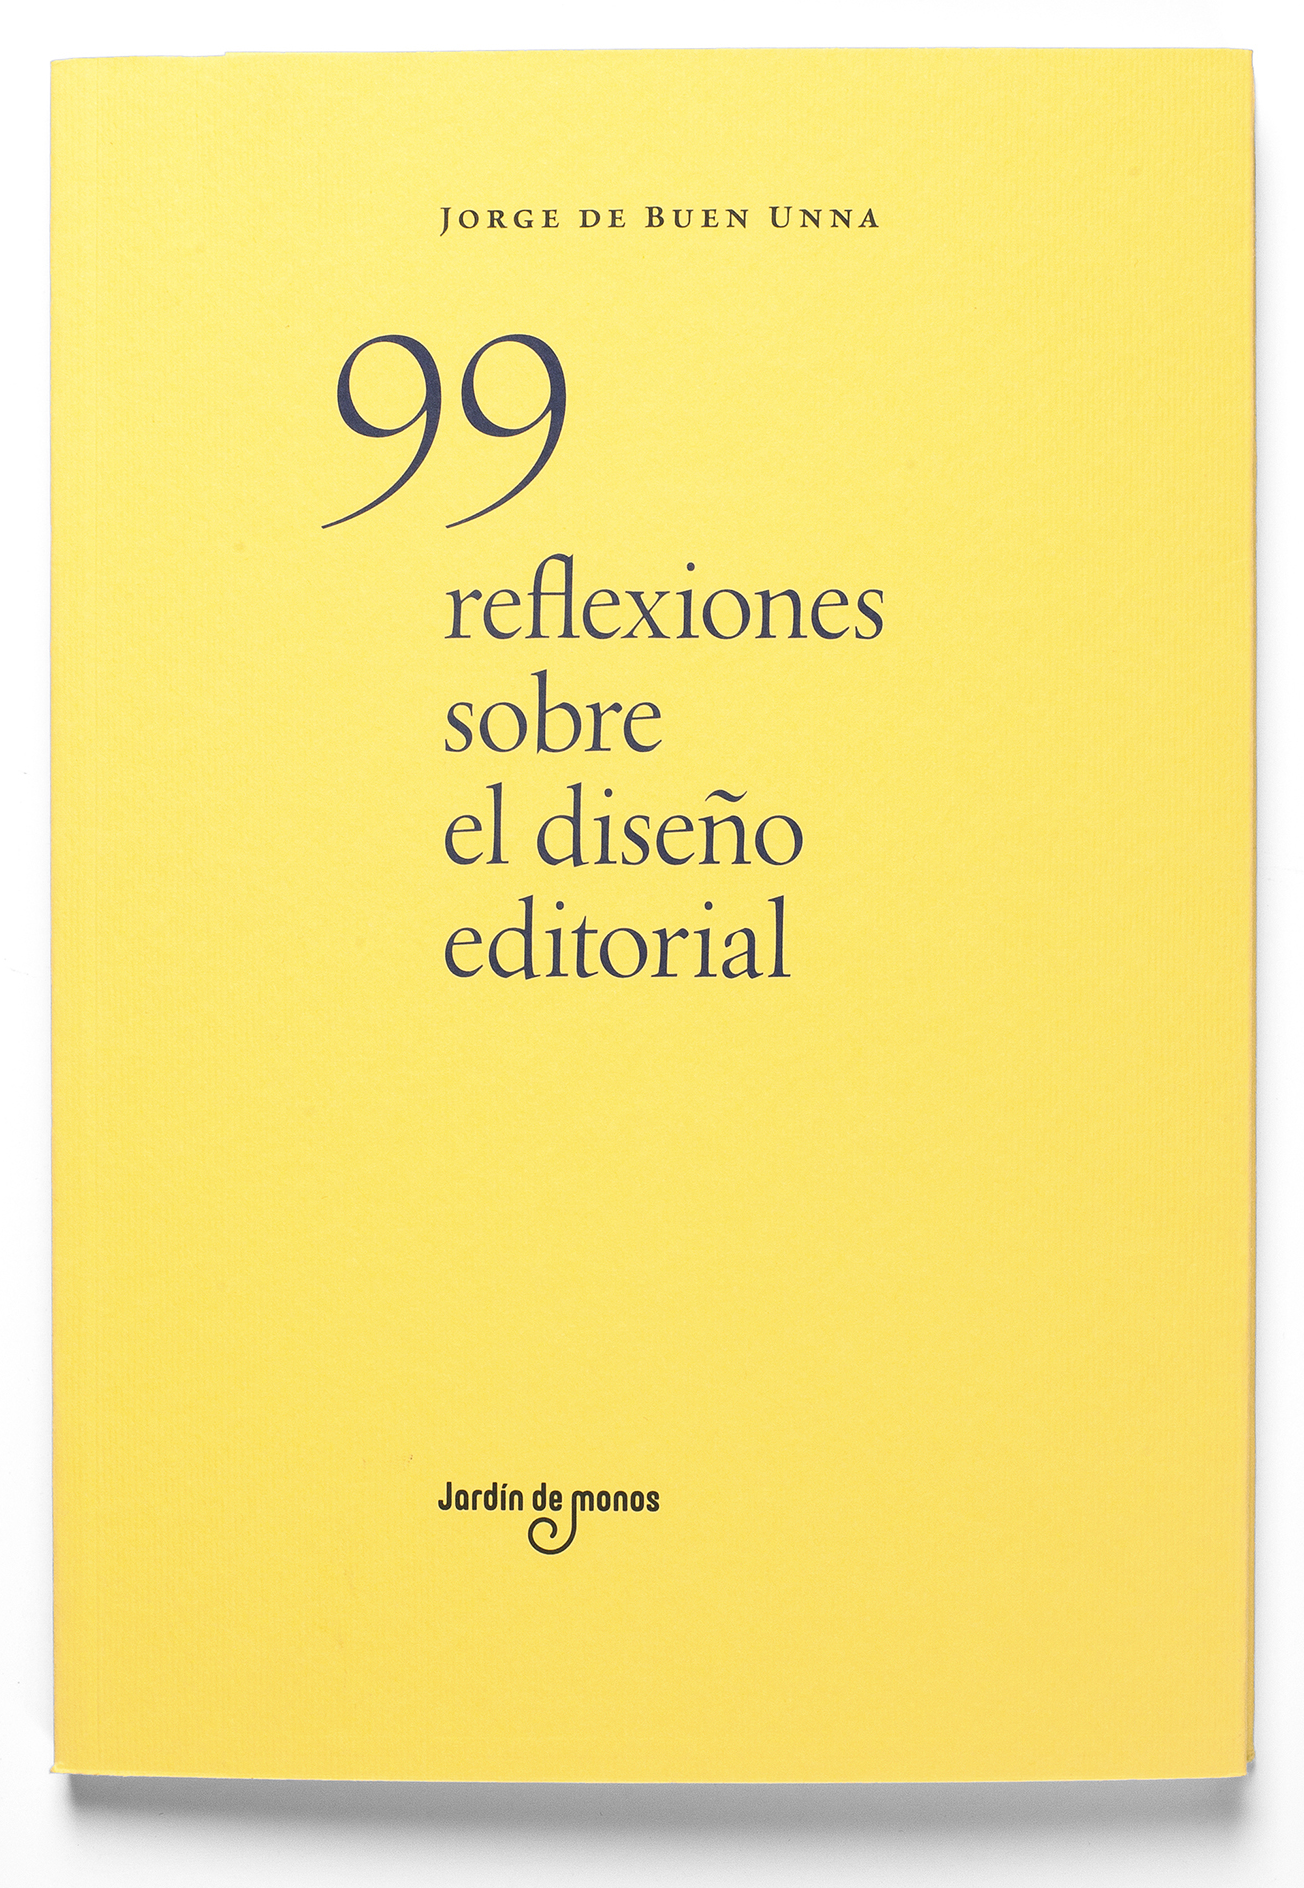 Cubierta de «99 reflexiones sobre el diseño editorial